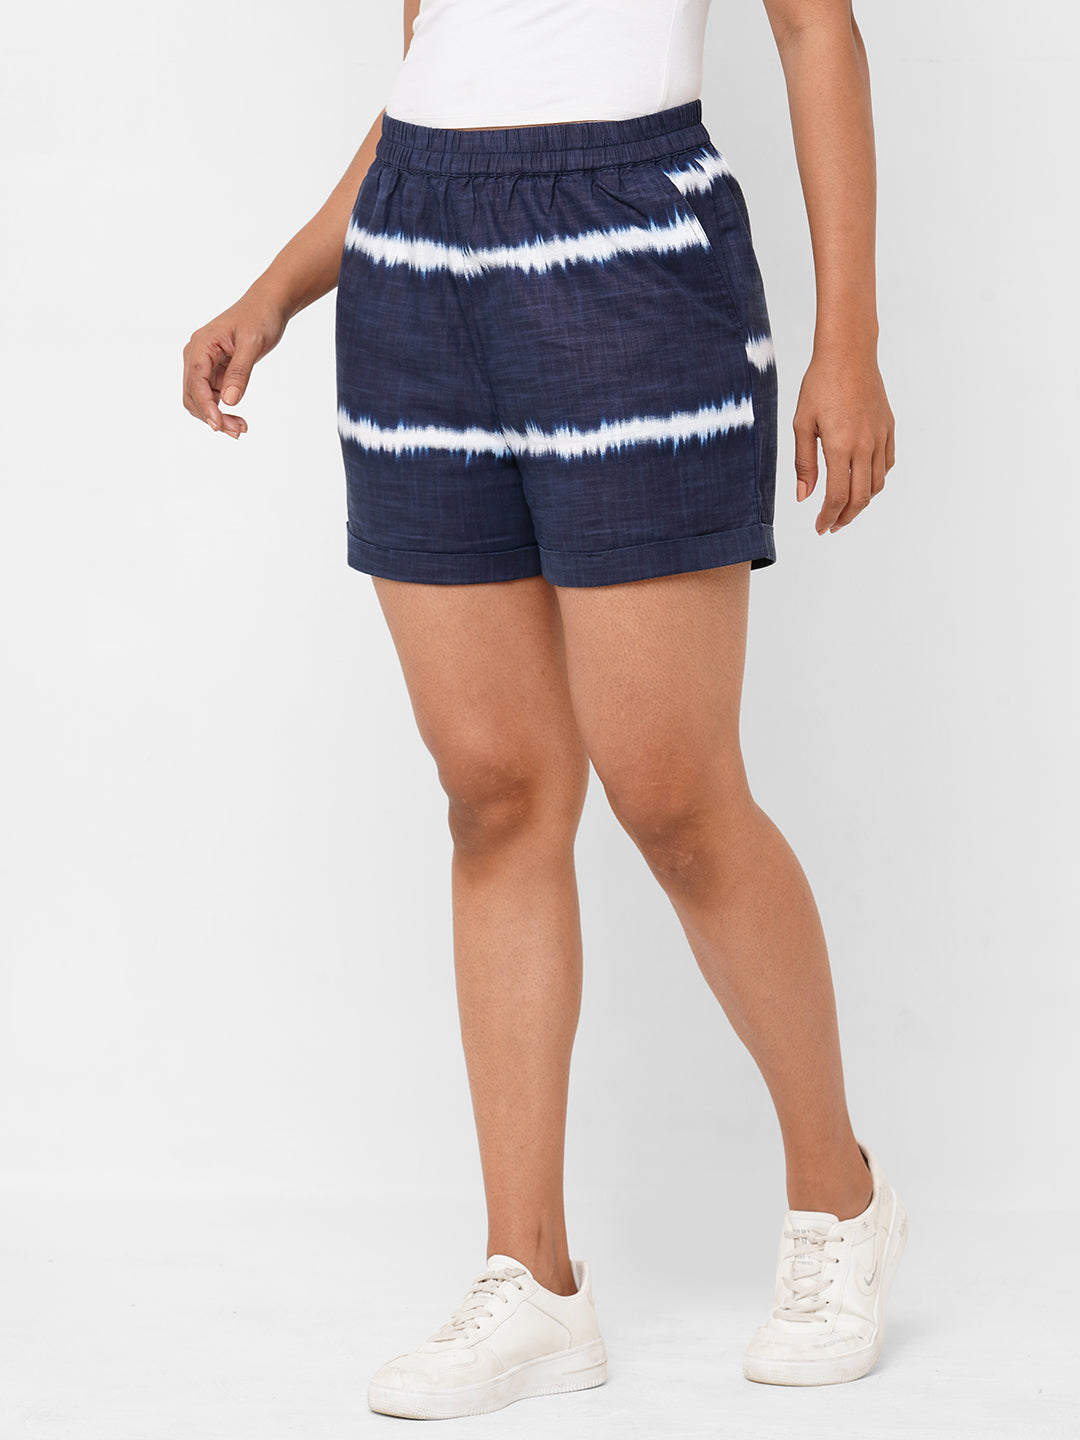 Buy Women's Cotton Lycra Casual Wear Regular Fit Shorts